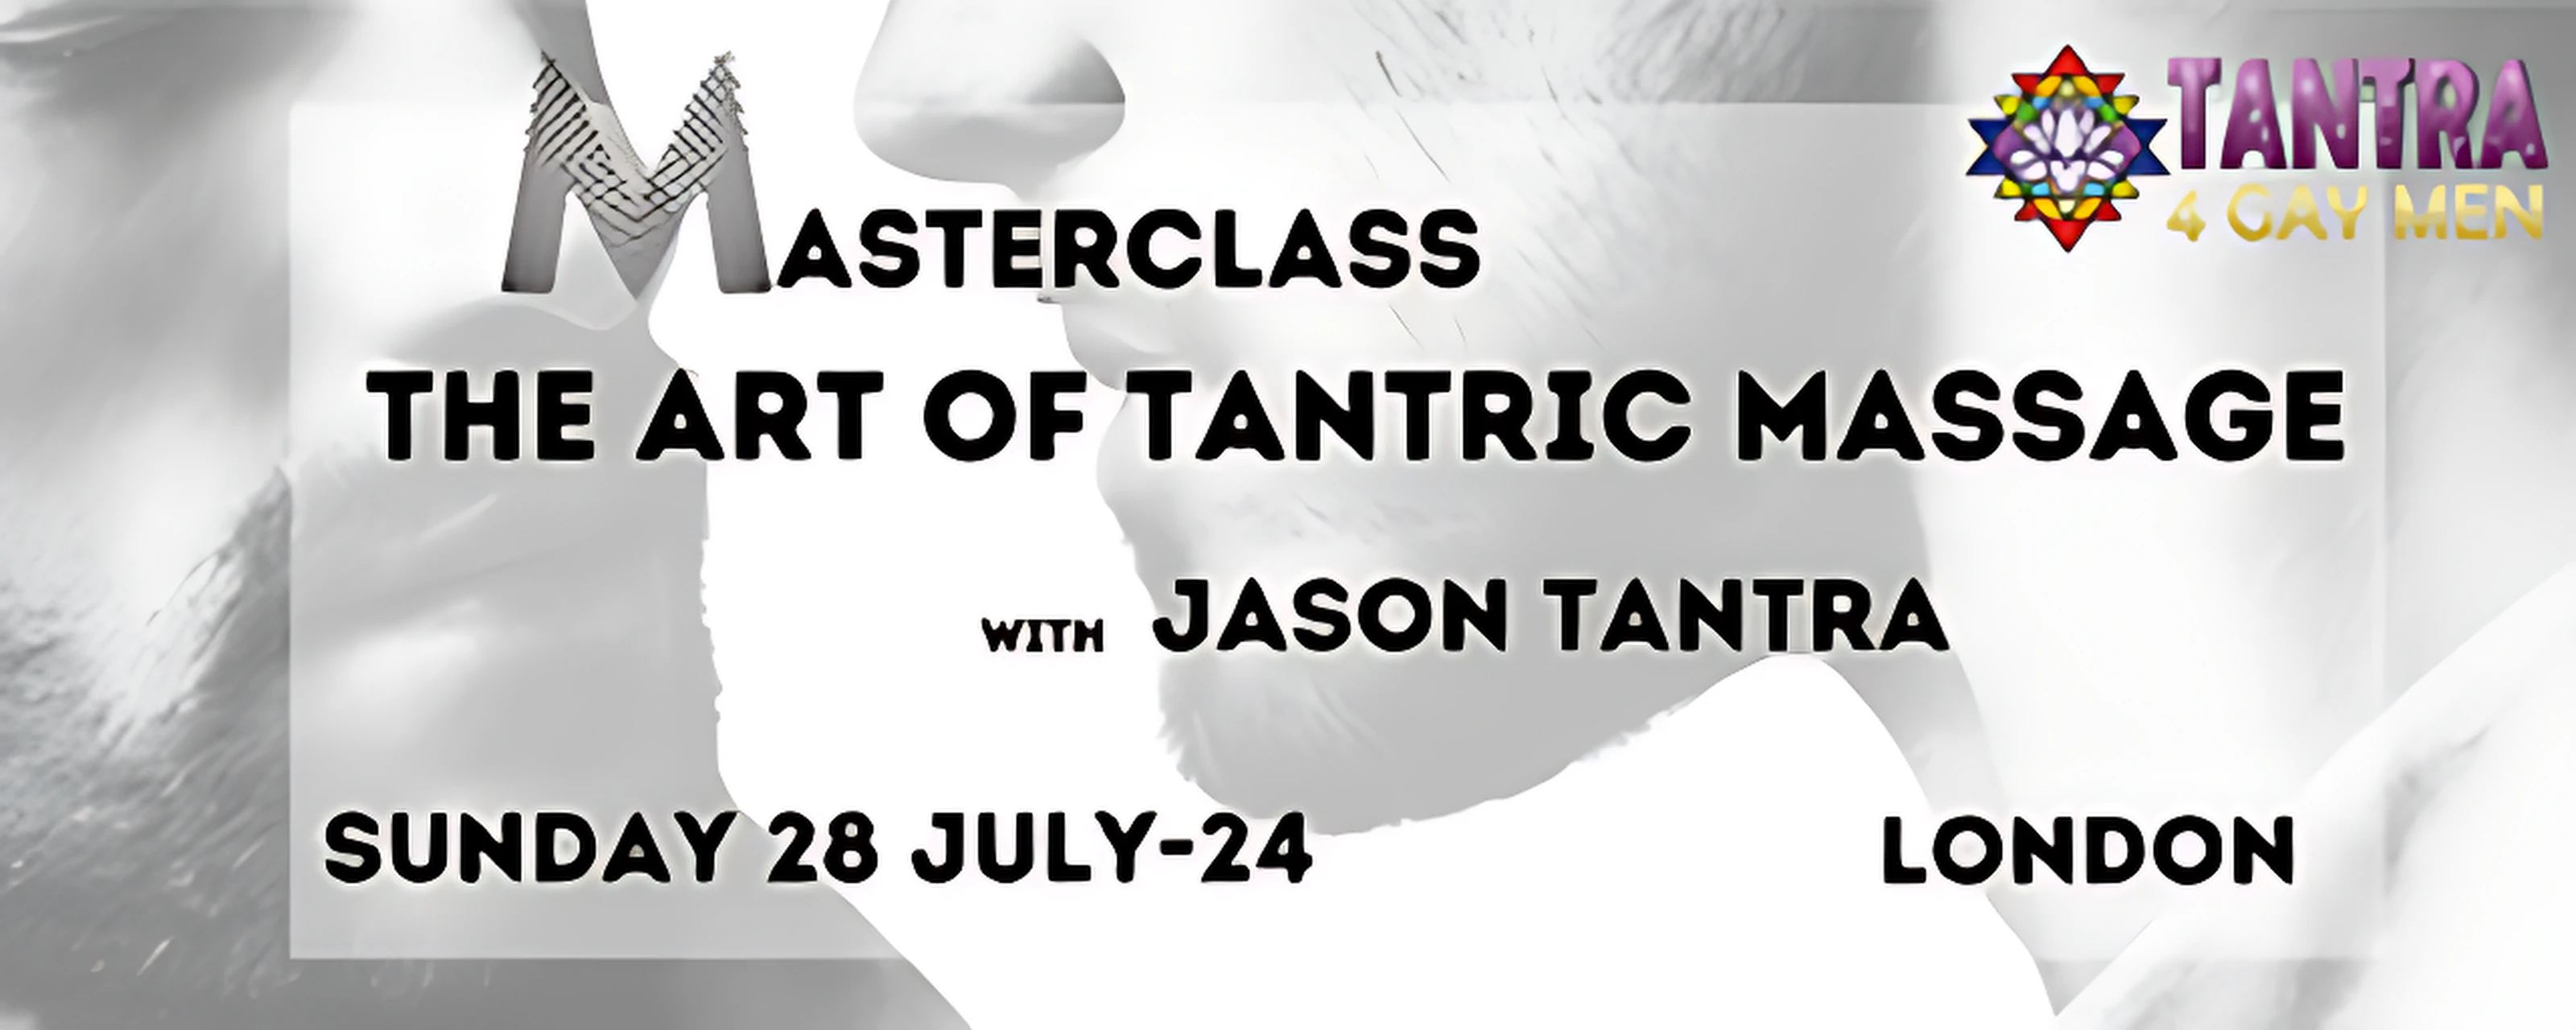 1-дневный мастер-класс: Искусство тантрического массажа